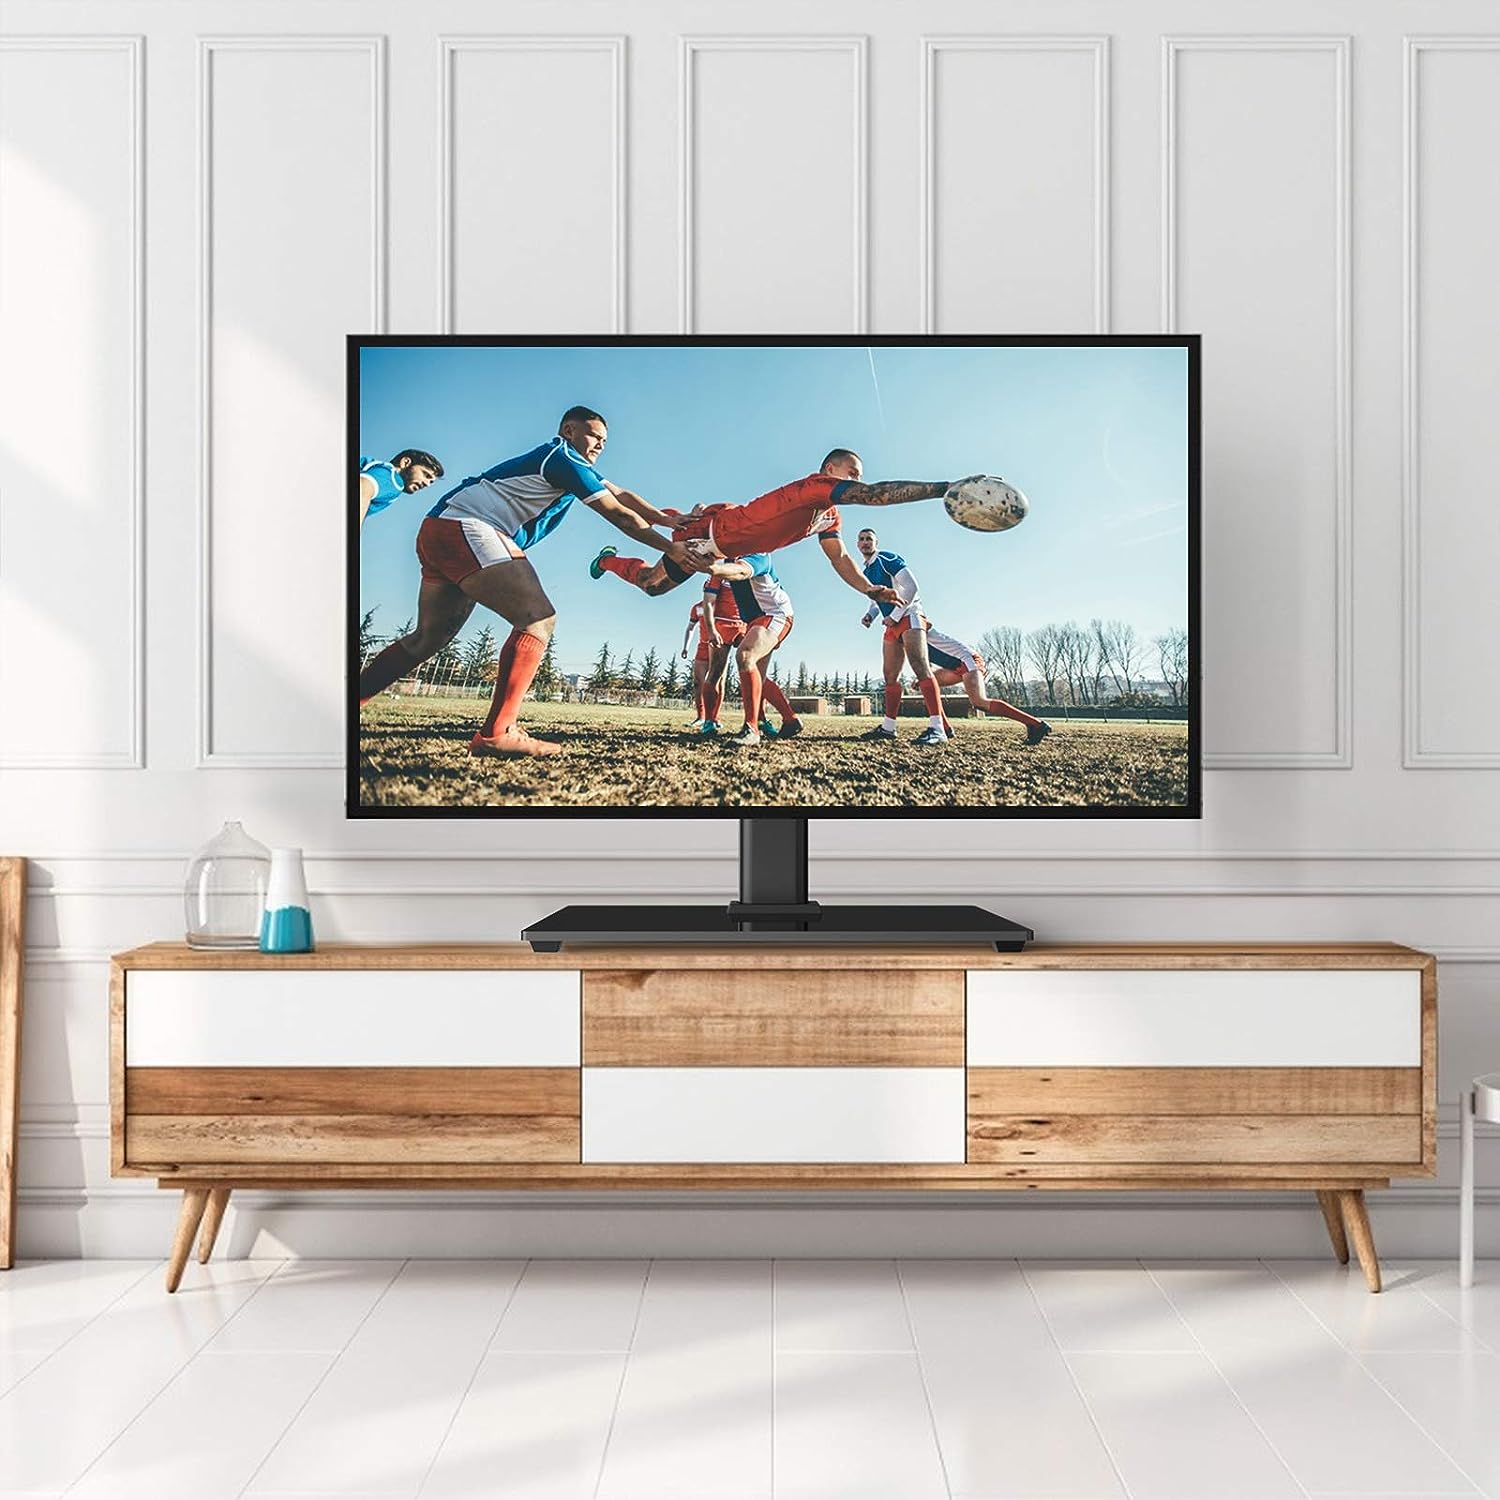  Rfiver Soporte universal para TV de mesa, base de TV con ajuste  de altura, se adapta a la mayoría de televisores LCD LED de pantalla plana  de 32 a 55 pulgadas